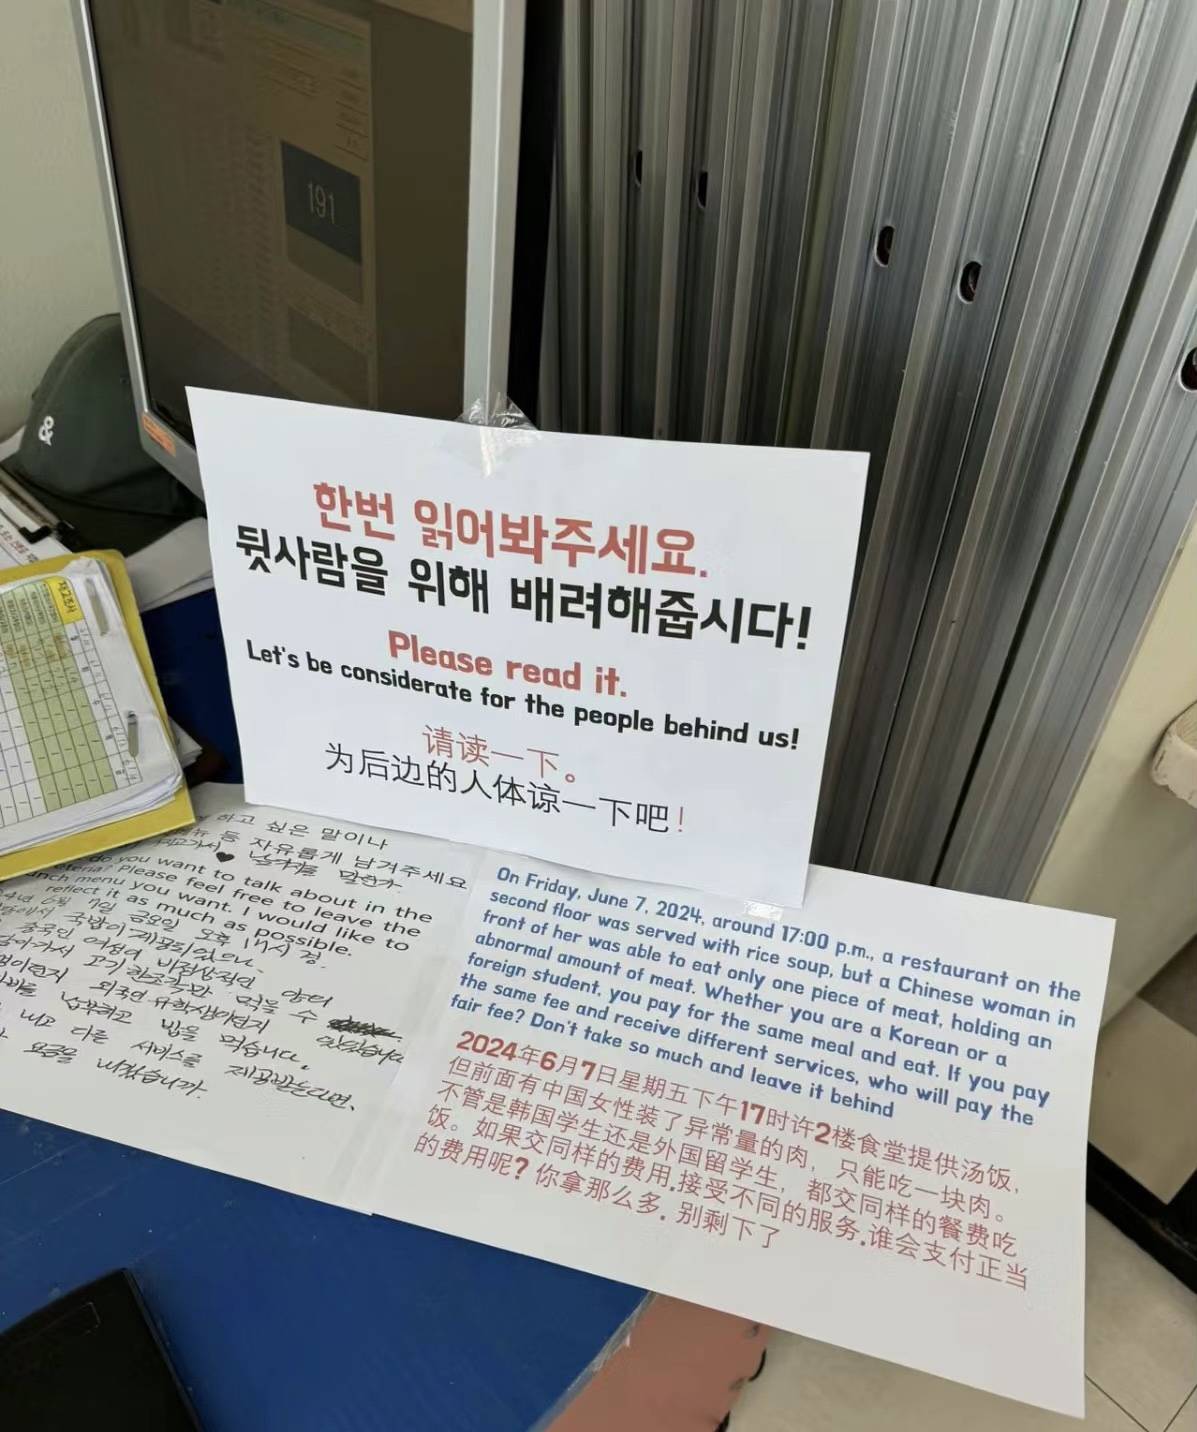   一个在韩国学习的中国学生被学校贴上了三种语言的通知，因为他在吃饭时吃了两块肉。